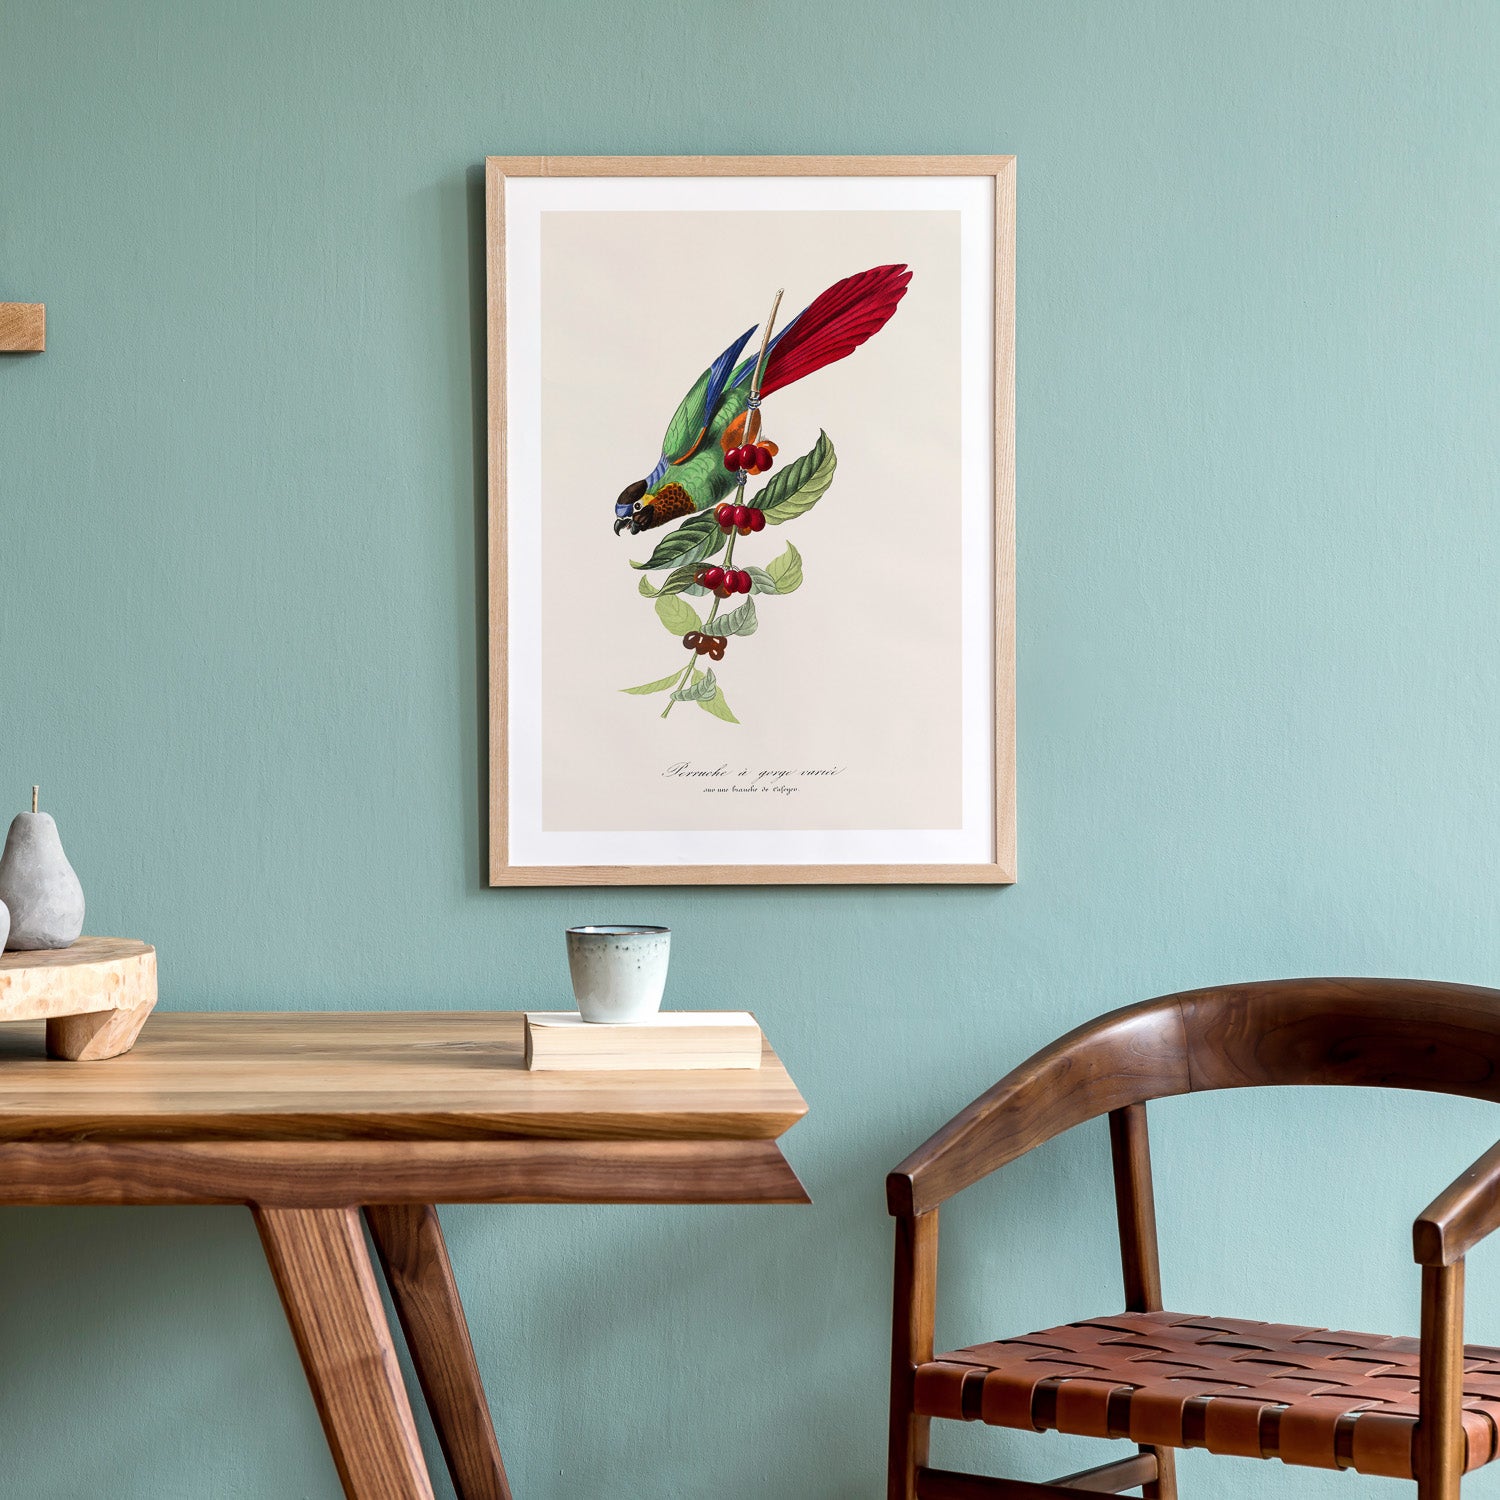 Tavla med en Parakit & Kaffeplanta poster  – Vintageposter med fågel och kaffe